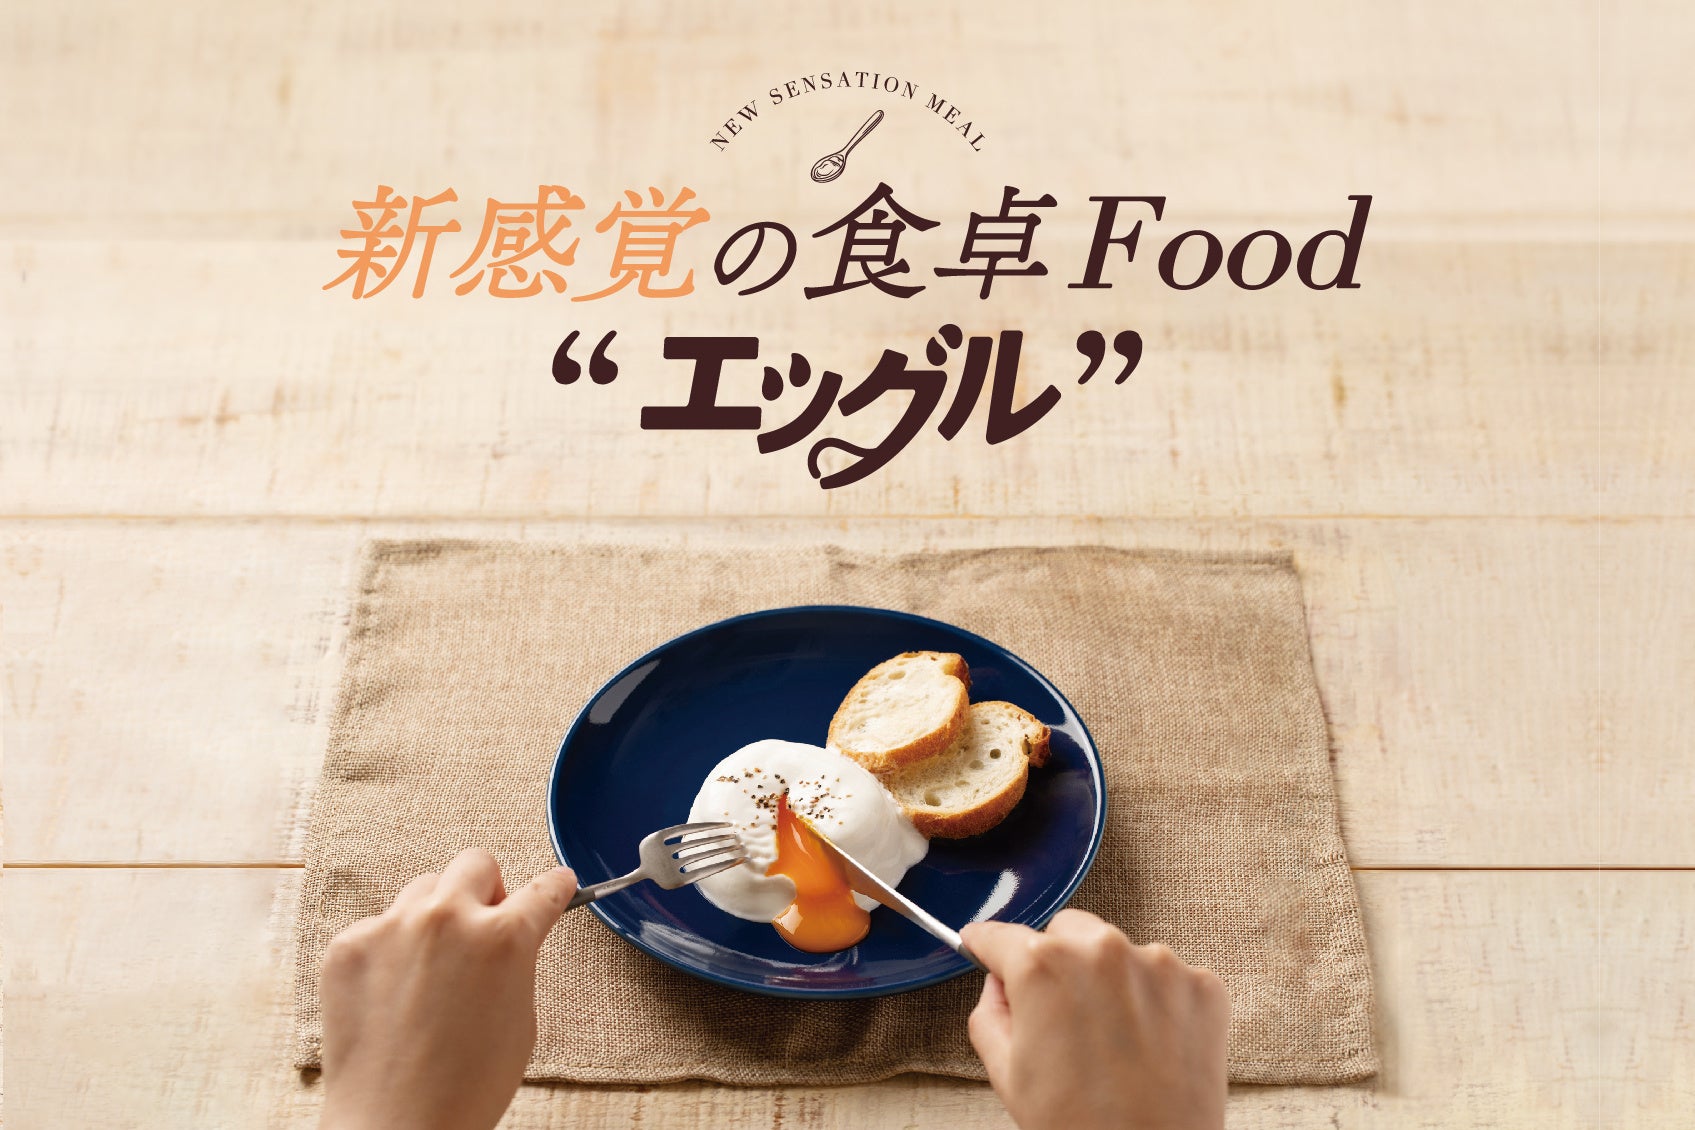 和食麺処サガミ・団欒食堂あいそ家で『接客おもてなしコンテスト』を開催